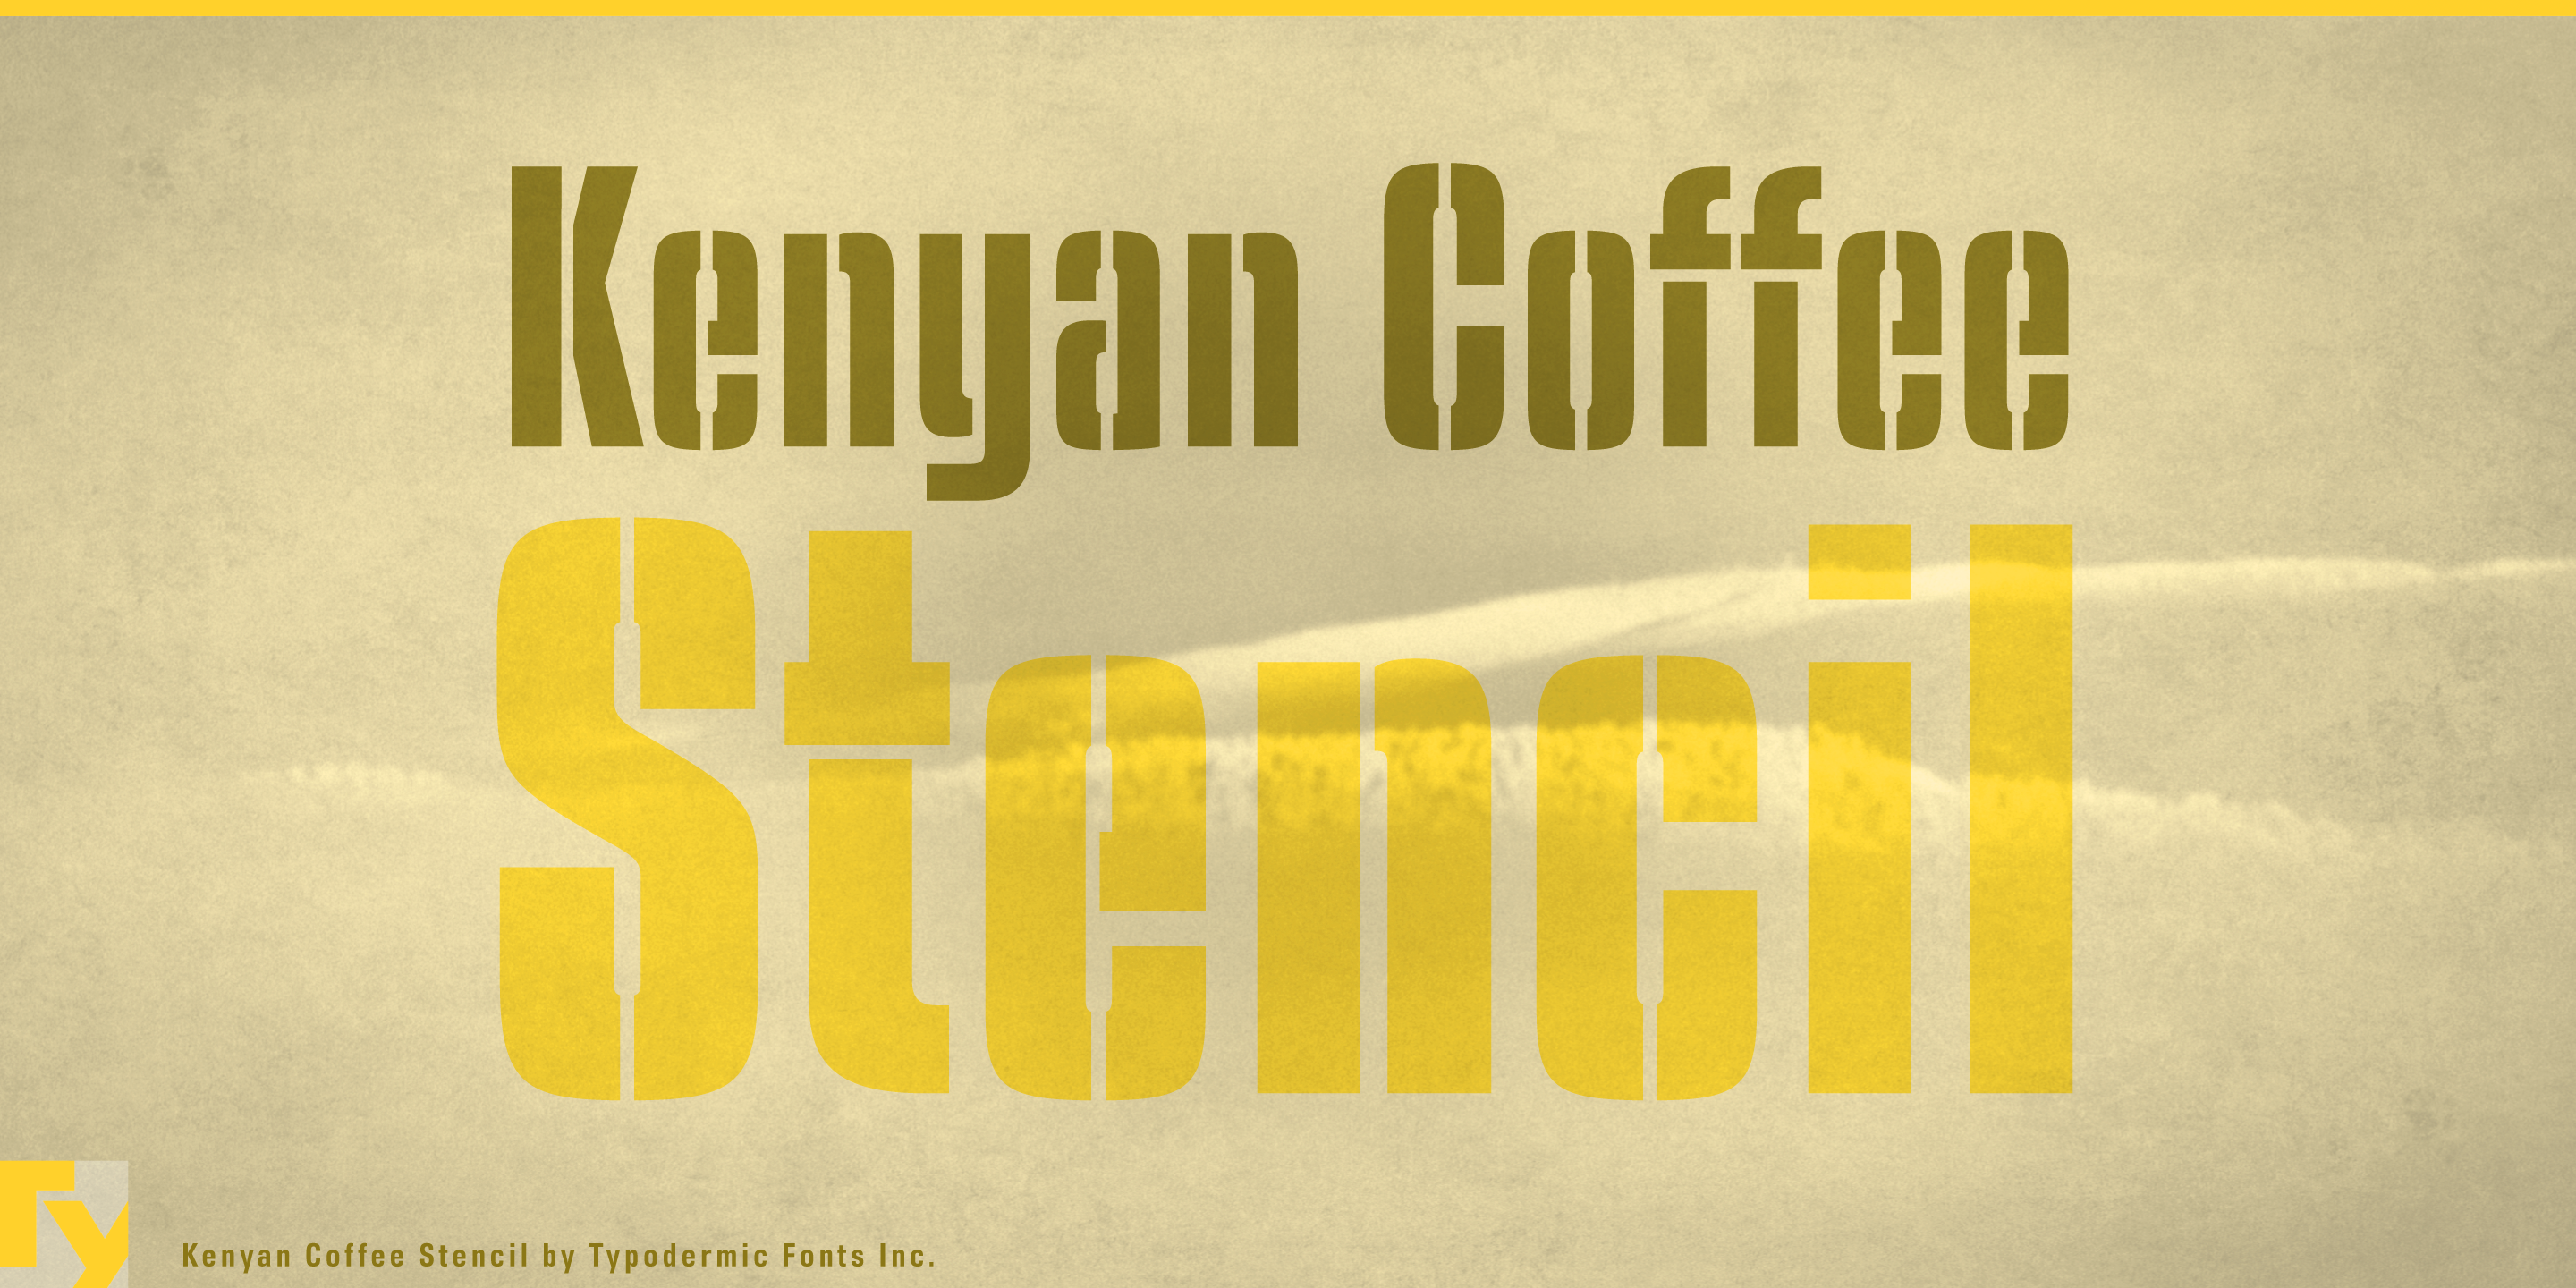 Font Kenyan Coffee Stencil